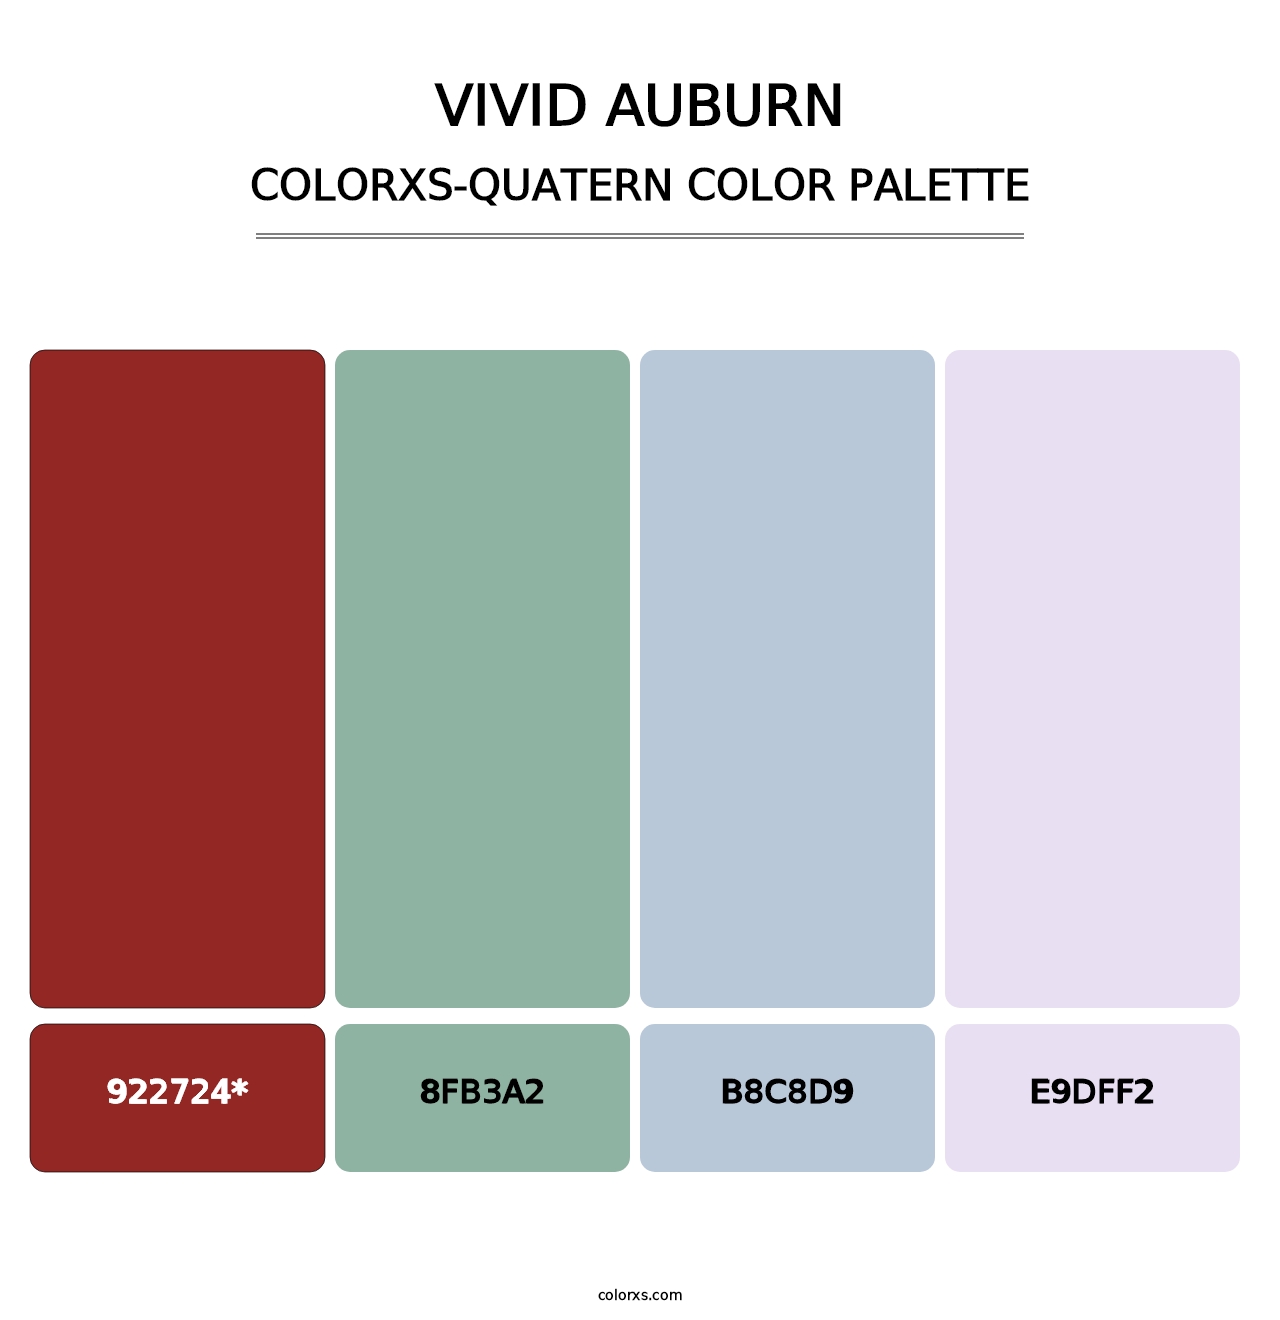 Vivid Auburn - Colorxs Quatern Palette